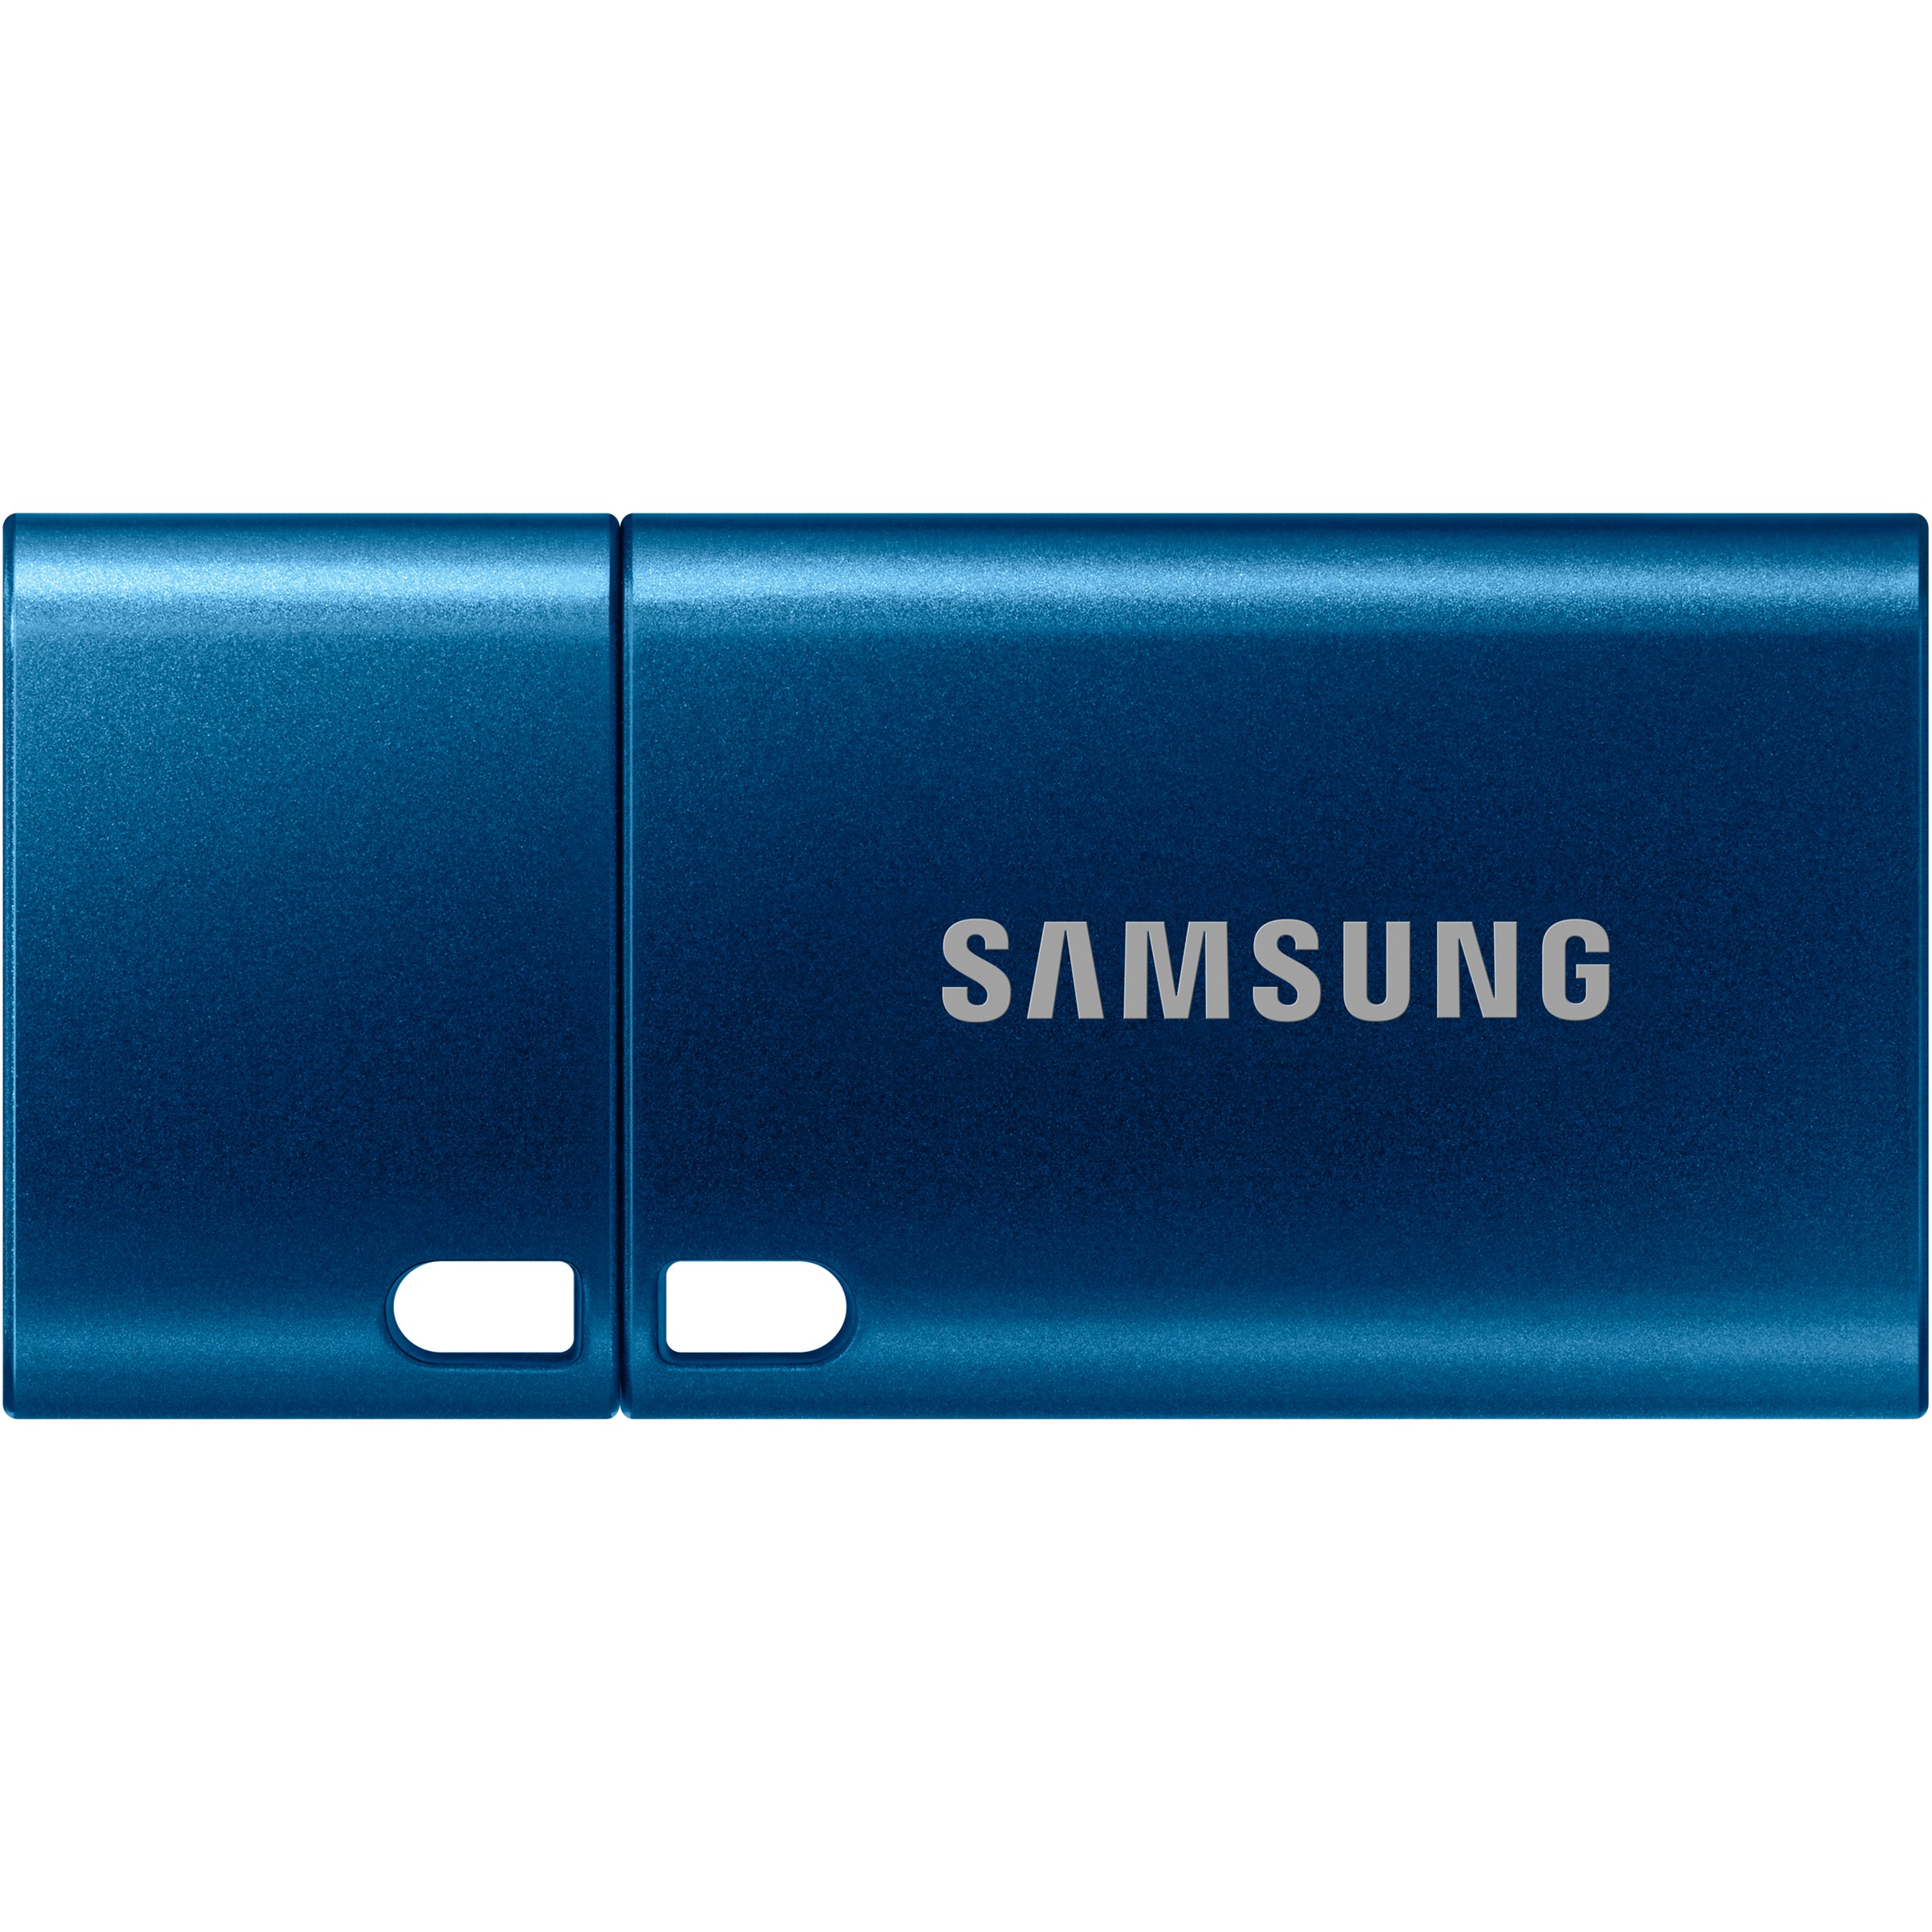 Samsung MUF-256DA USB flash drive